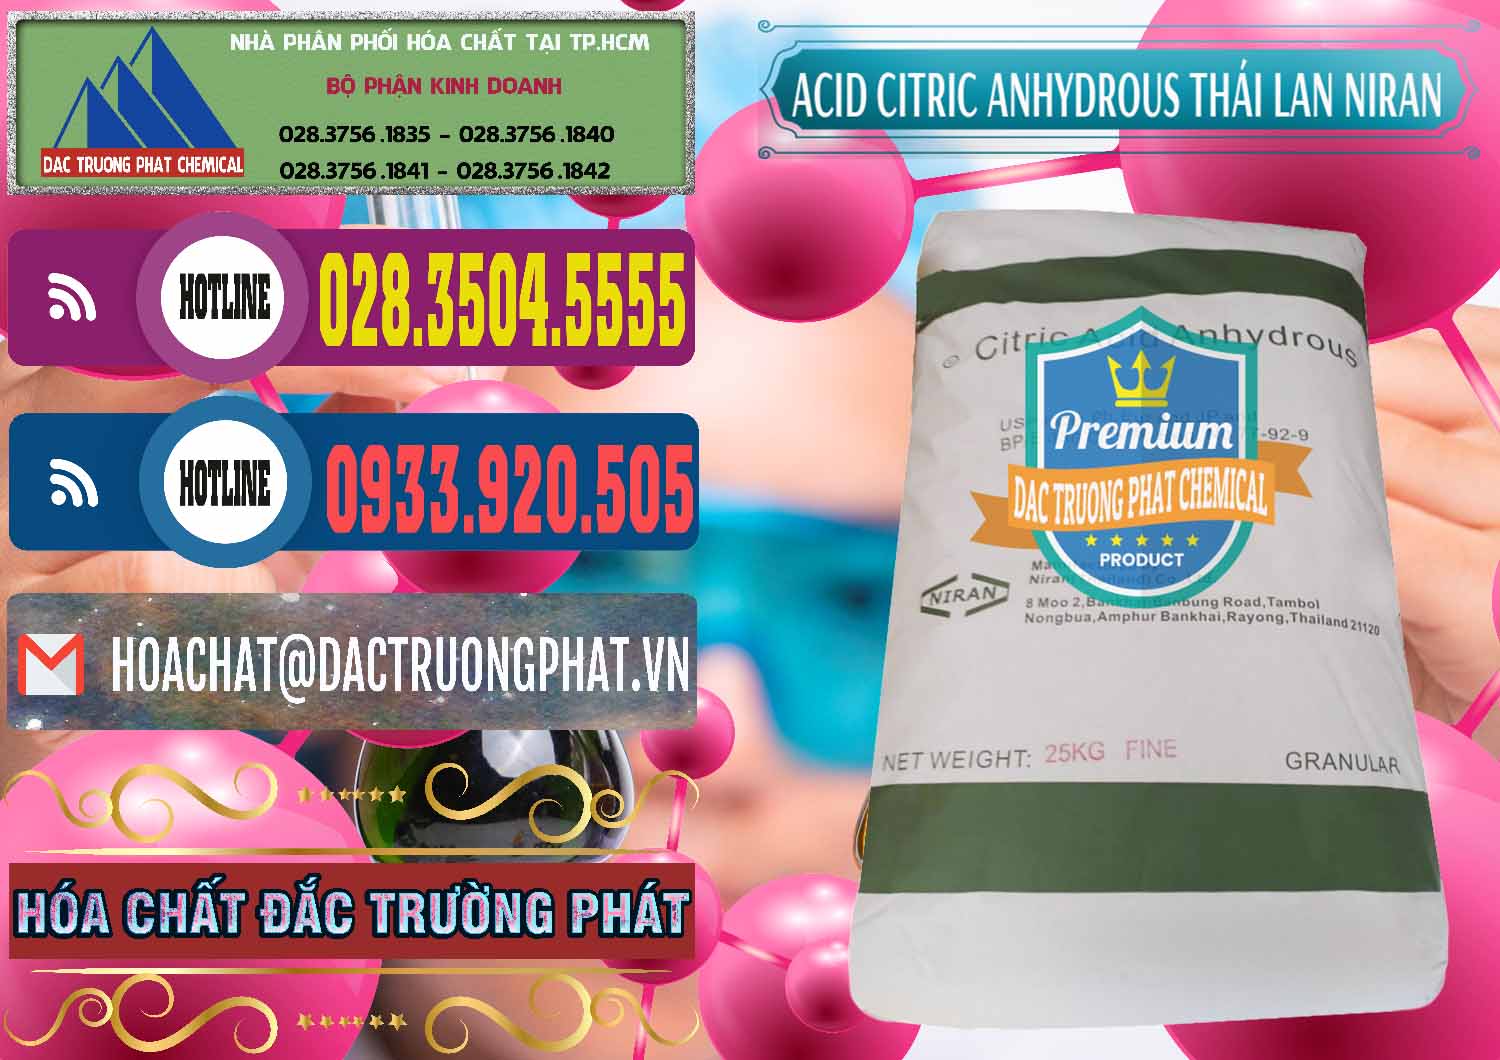 Cty bán ( phân phối ) Acid Citric - Axit Citric Anhydrous - Thái Lan Niran - 0231 - Đơn vị chuyên cung ứng và phân phối hóa chất tại TP.HCM - muabanhoachat.com.vn